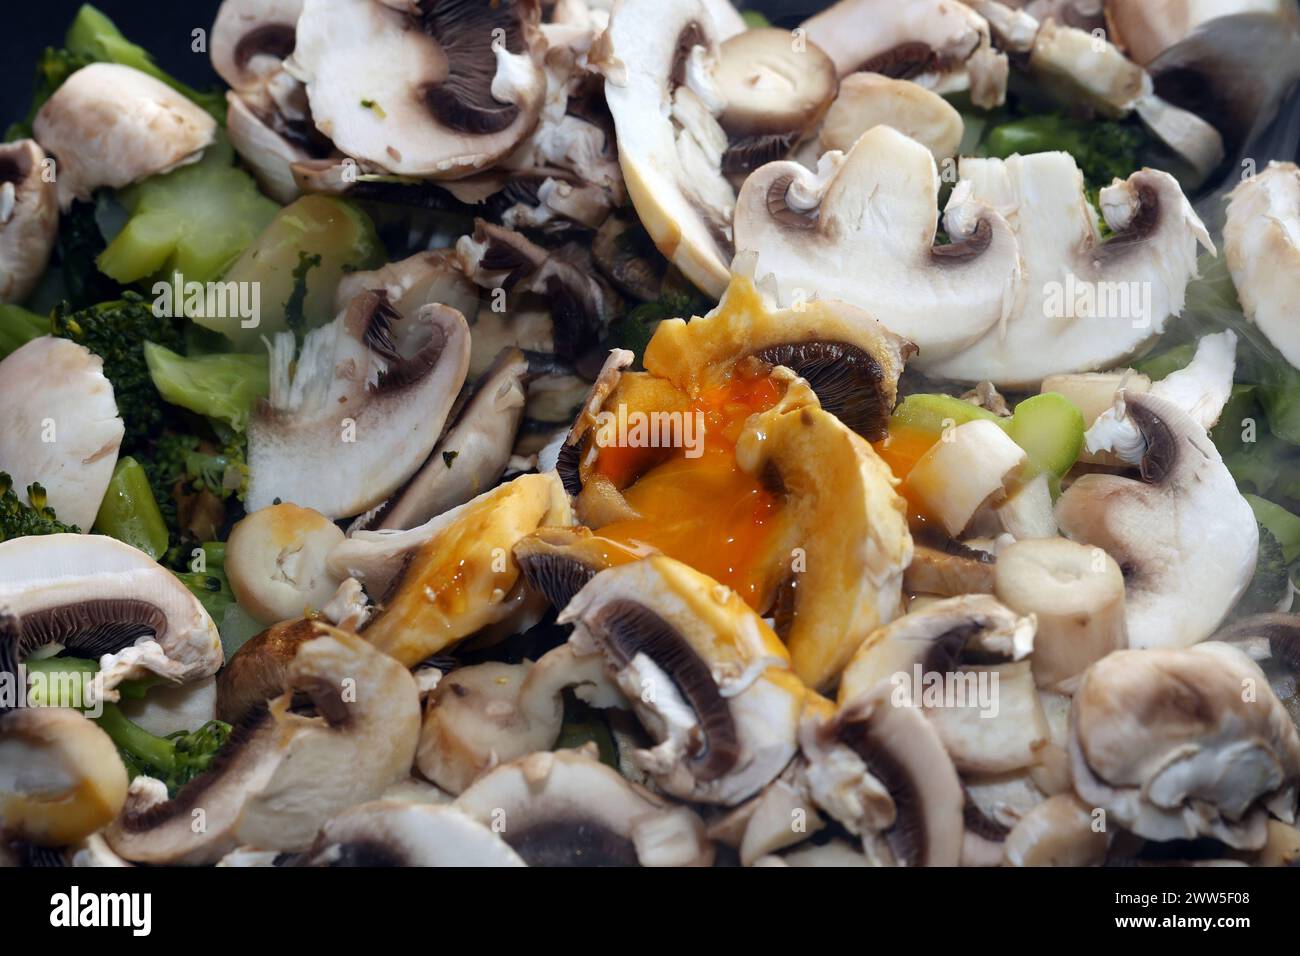 Vegane Gemüseküche Brokkoli, Champignons, Zucchini und Grünkohl während der Zubereitung in einer Bratpfanne *** Vegan Gemüseküche Brokkoli, Pilze, Zucchinis und Grünkohl während der Zubereitung in einer Pfanne Stockfoto